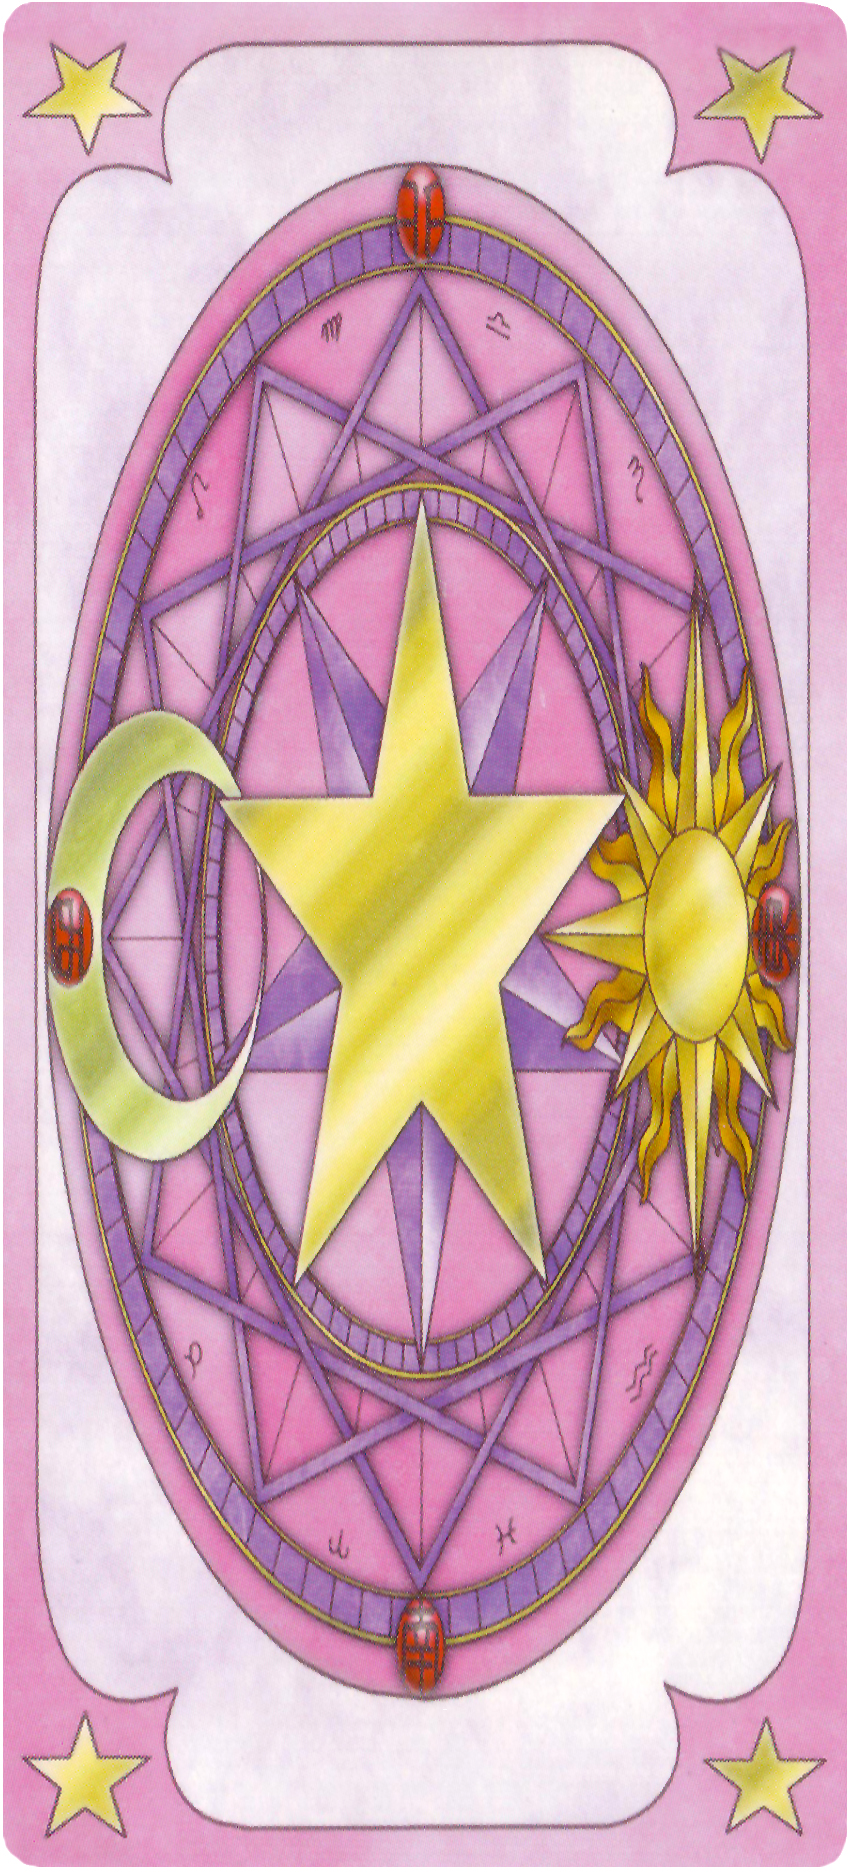 Chapter 17 (Clear Card) | Cardcaptor Sakura Wiki | Fandom